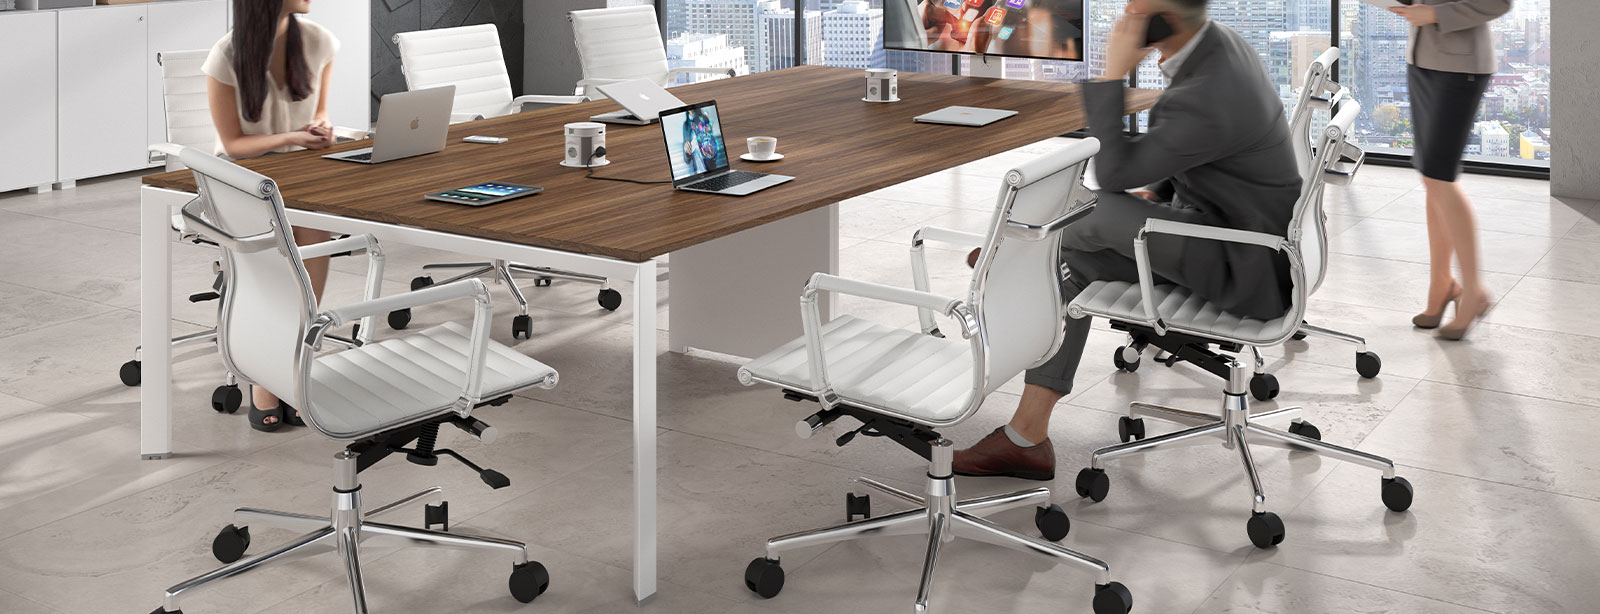  Cómodas sillas de escritorio con respaldo alto, silla